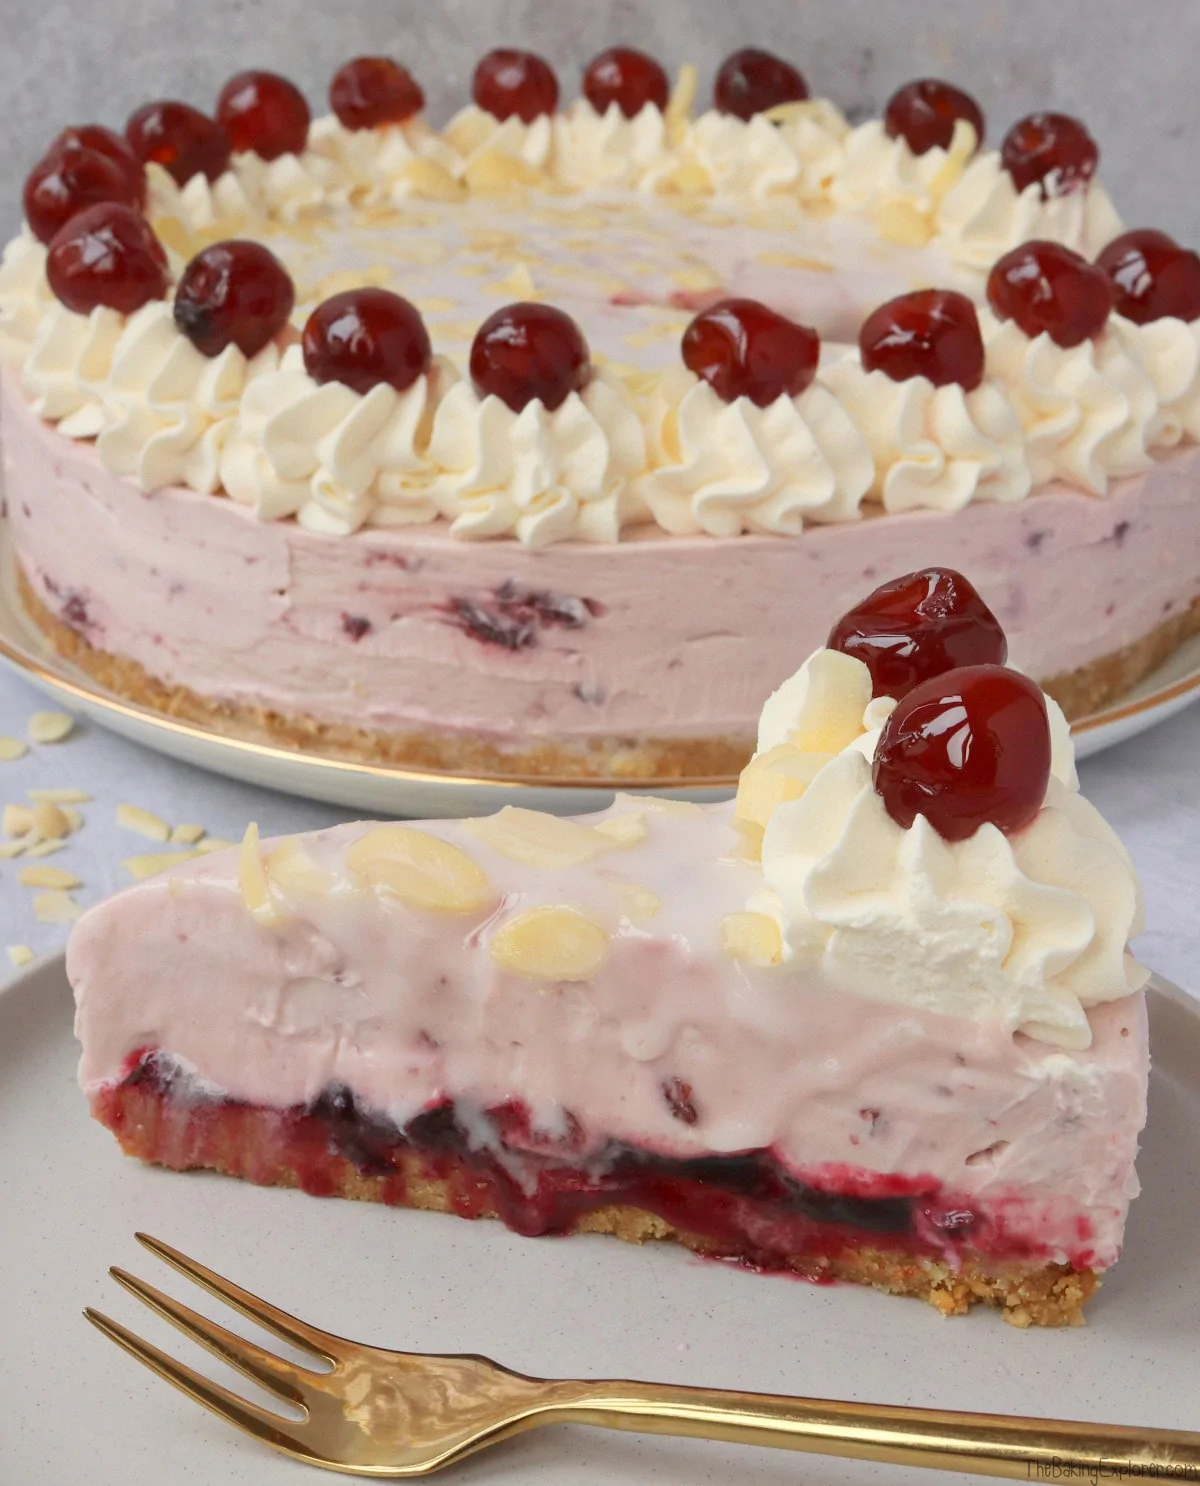 Cherry Bakewell Cheesecake (No Bake)